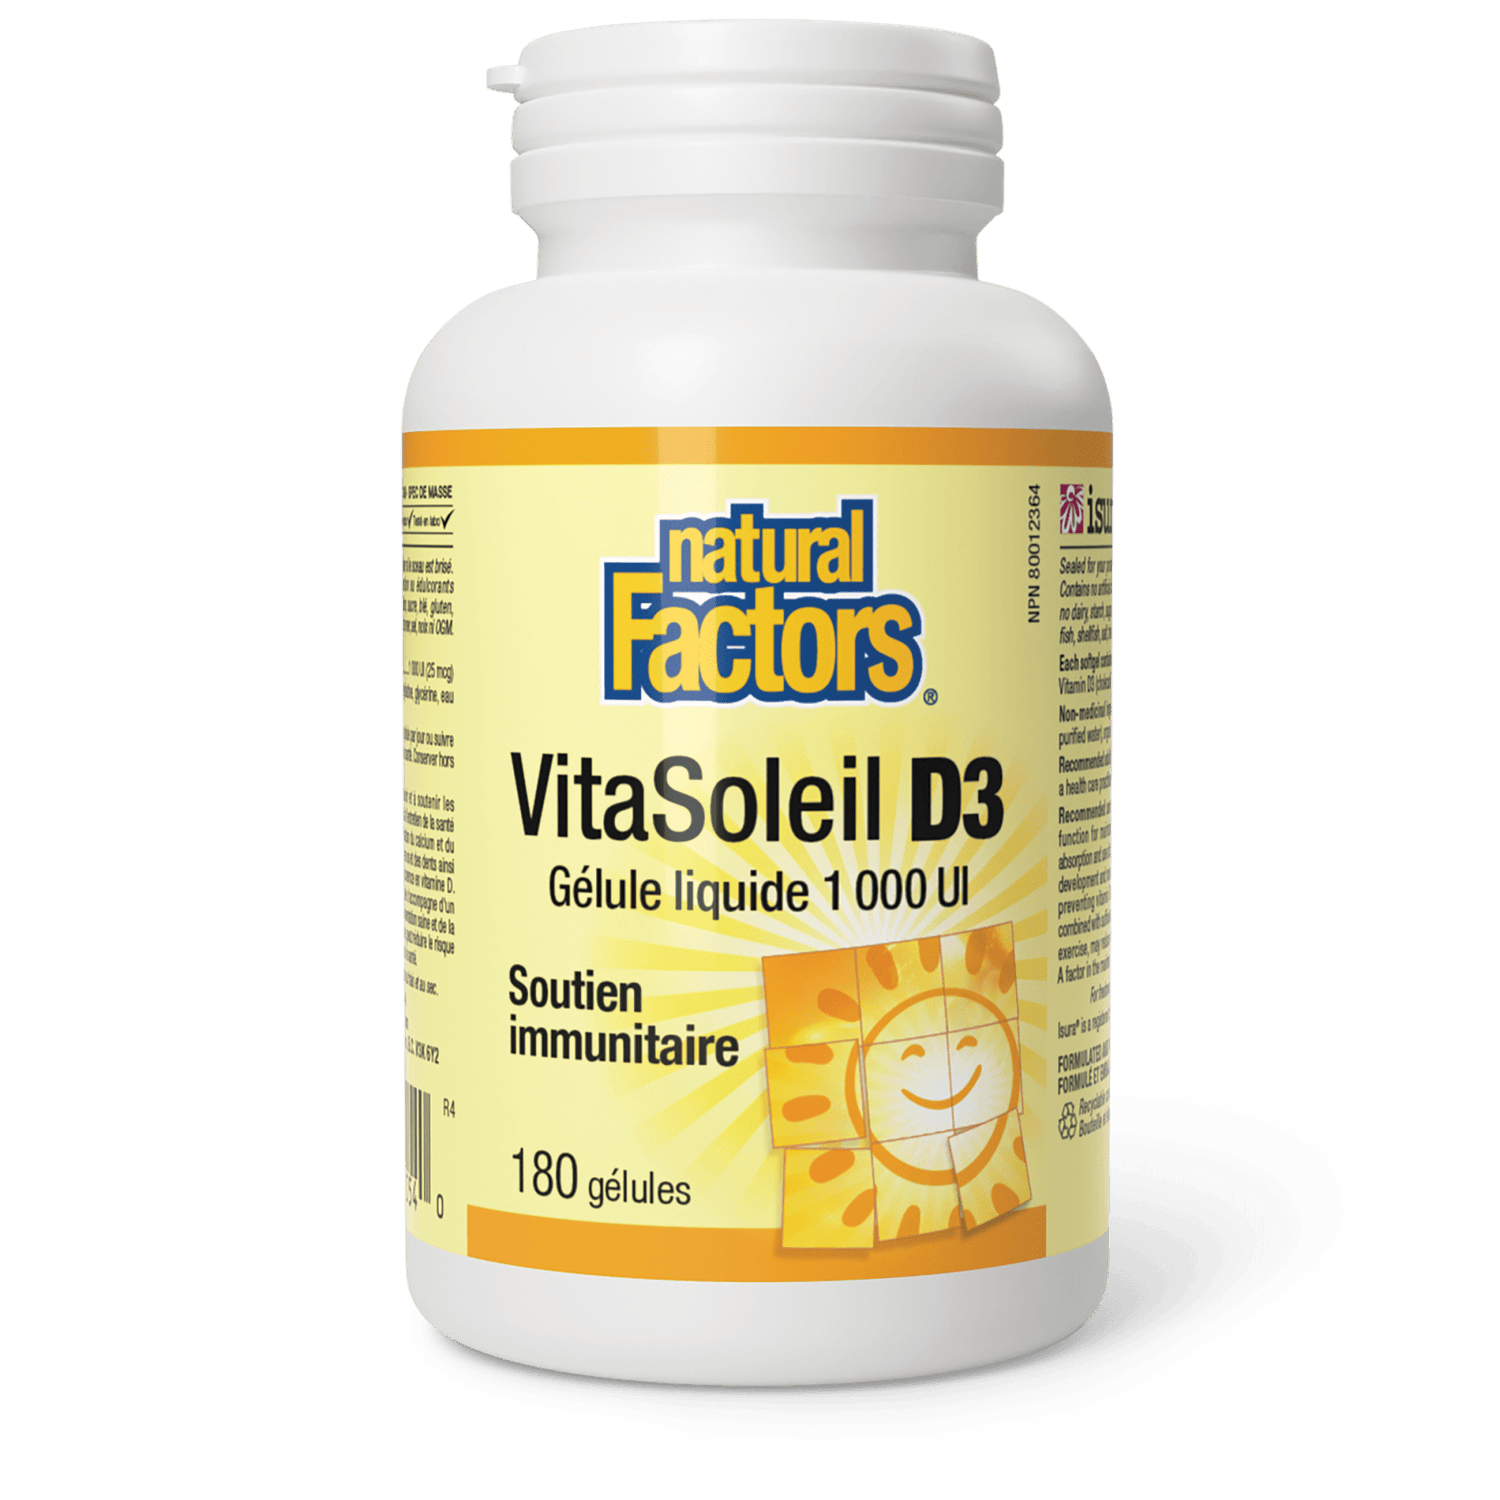 VitaSoleil D3 gélules 1 000 UI, Natural Factors|v|image|1054